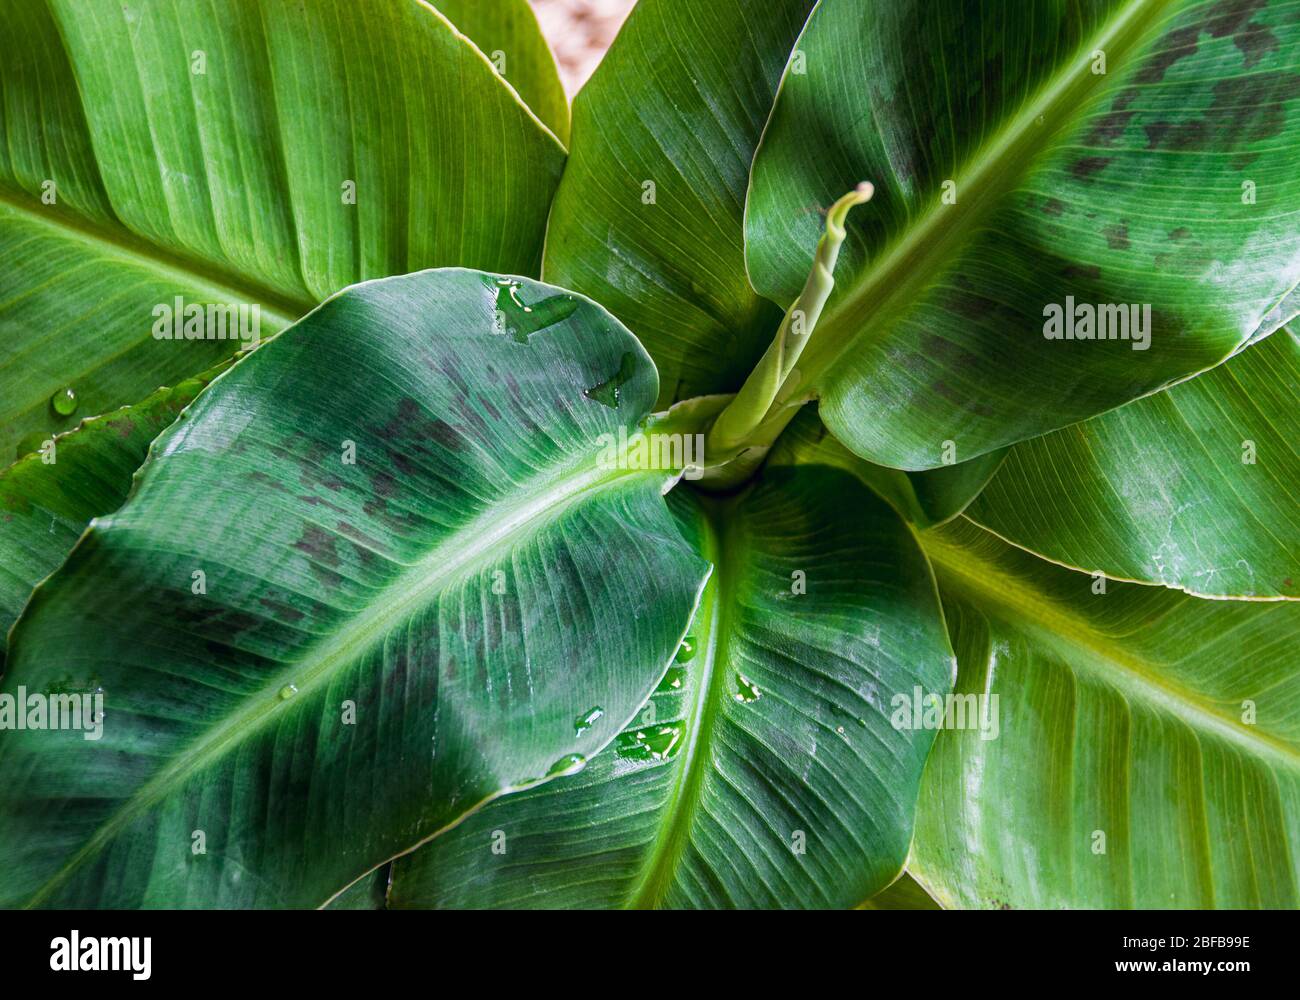 Primo piano su foglie di una pianta di banane di Cavendish nana (nana di musa) che formano una rosetta attraente. Bellissimo esotico dettaglio di piante domestiche. Foto Stock